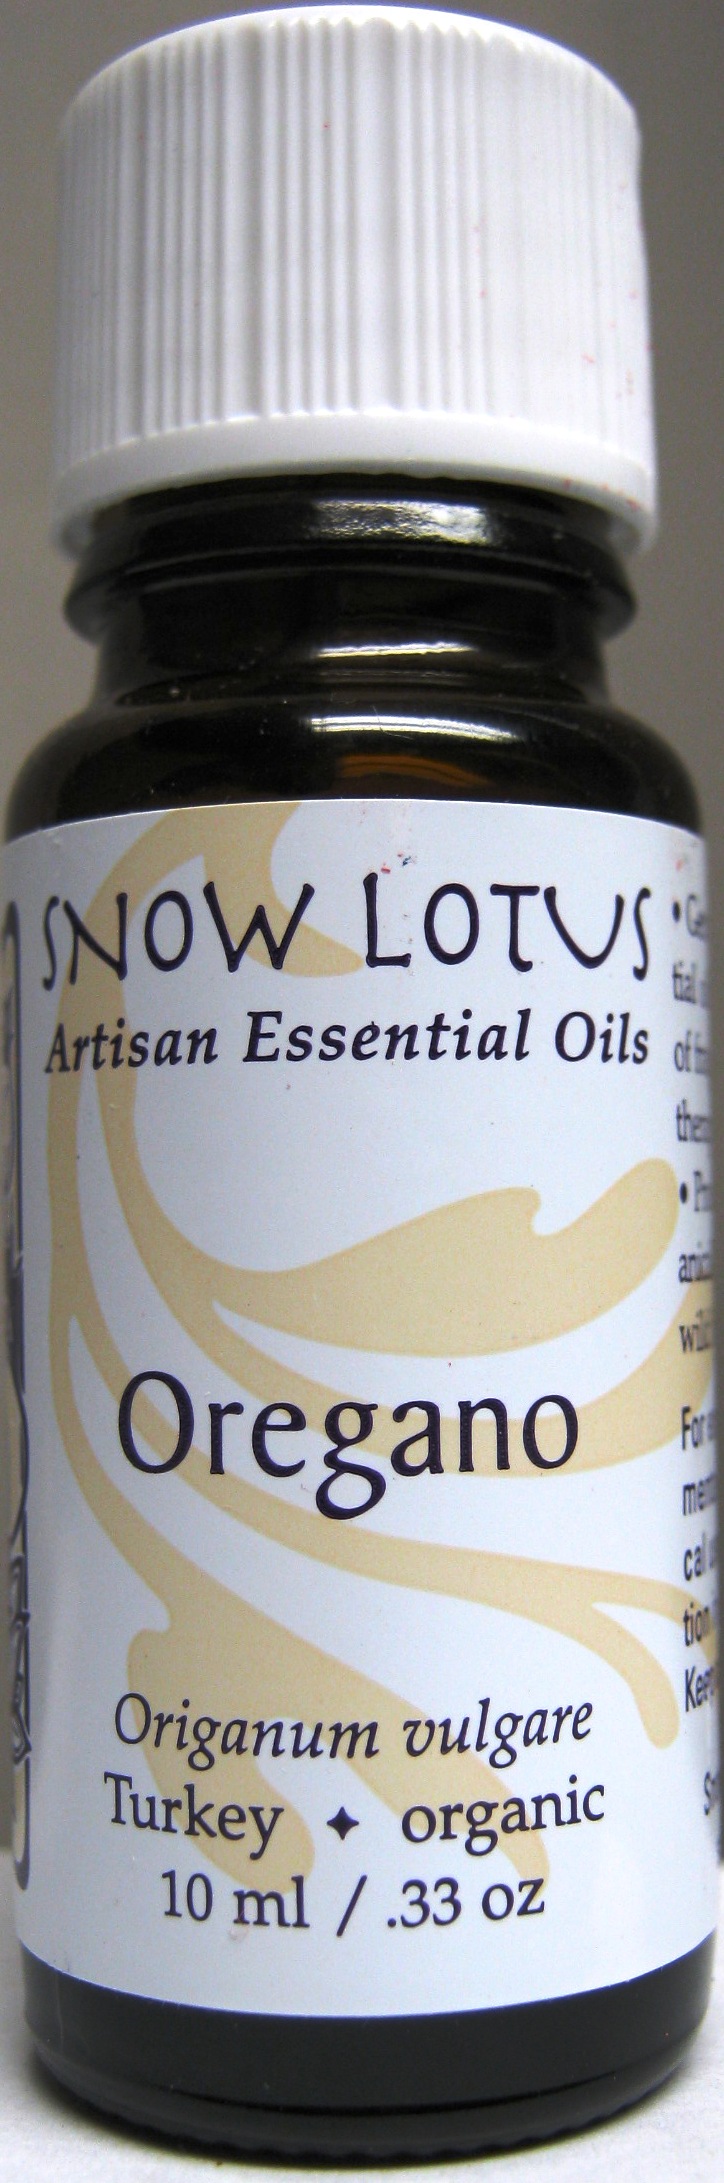 Oregano (wild) Essential Oil